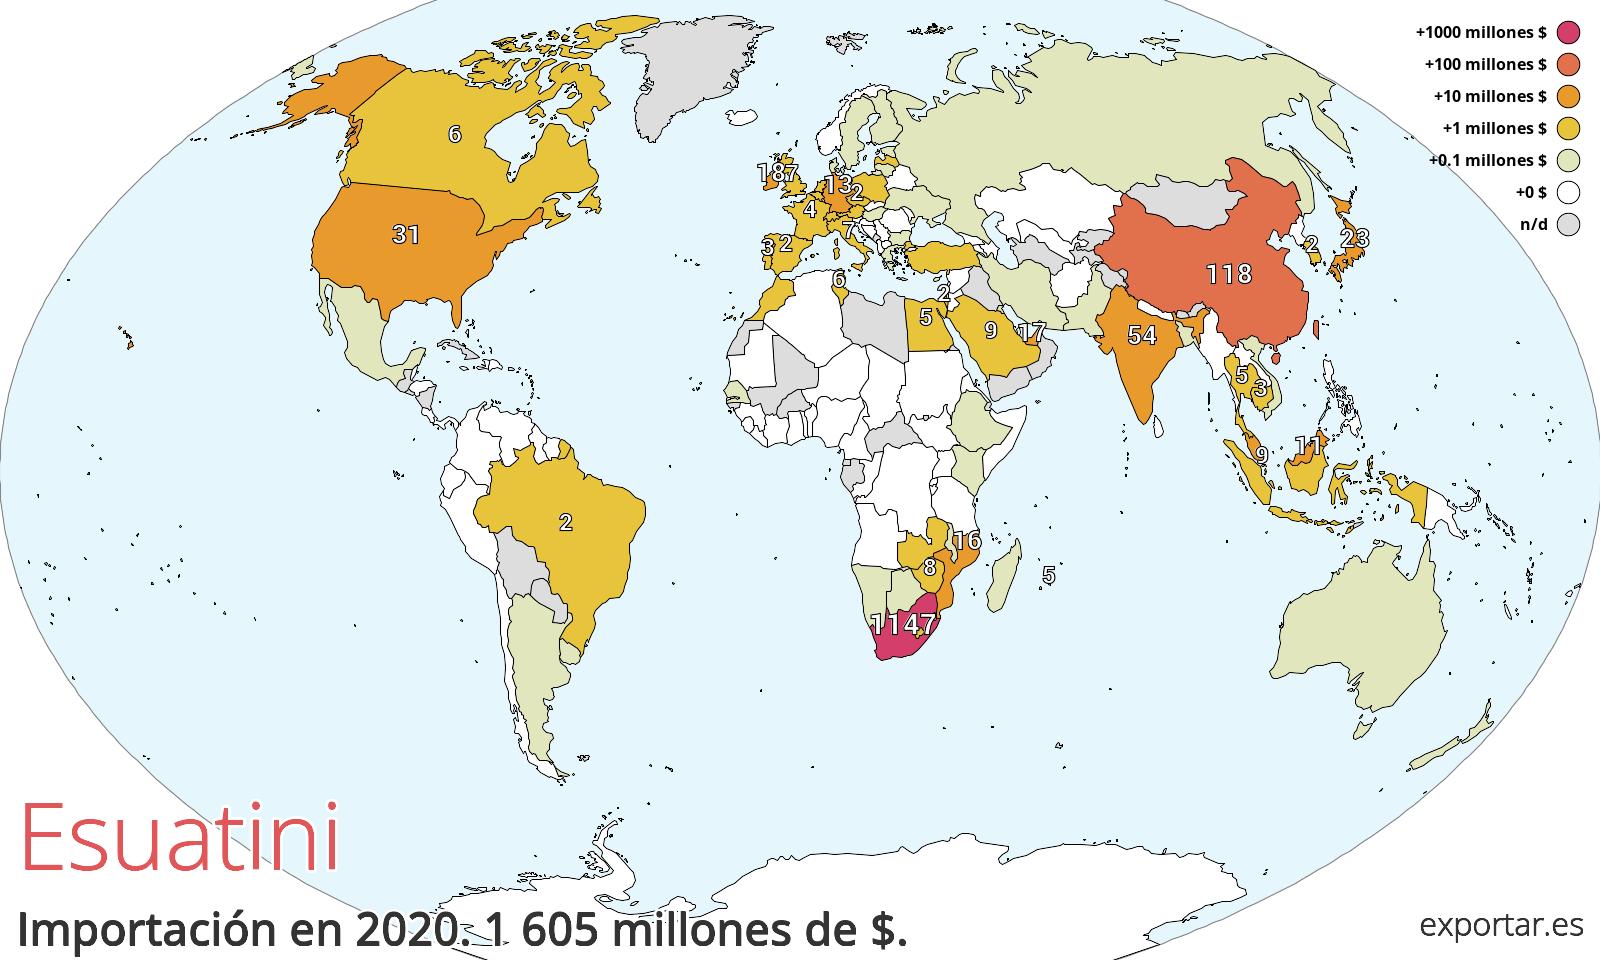 Mapa de importación de Esuatini en 2020.